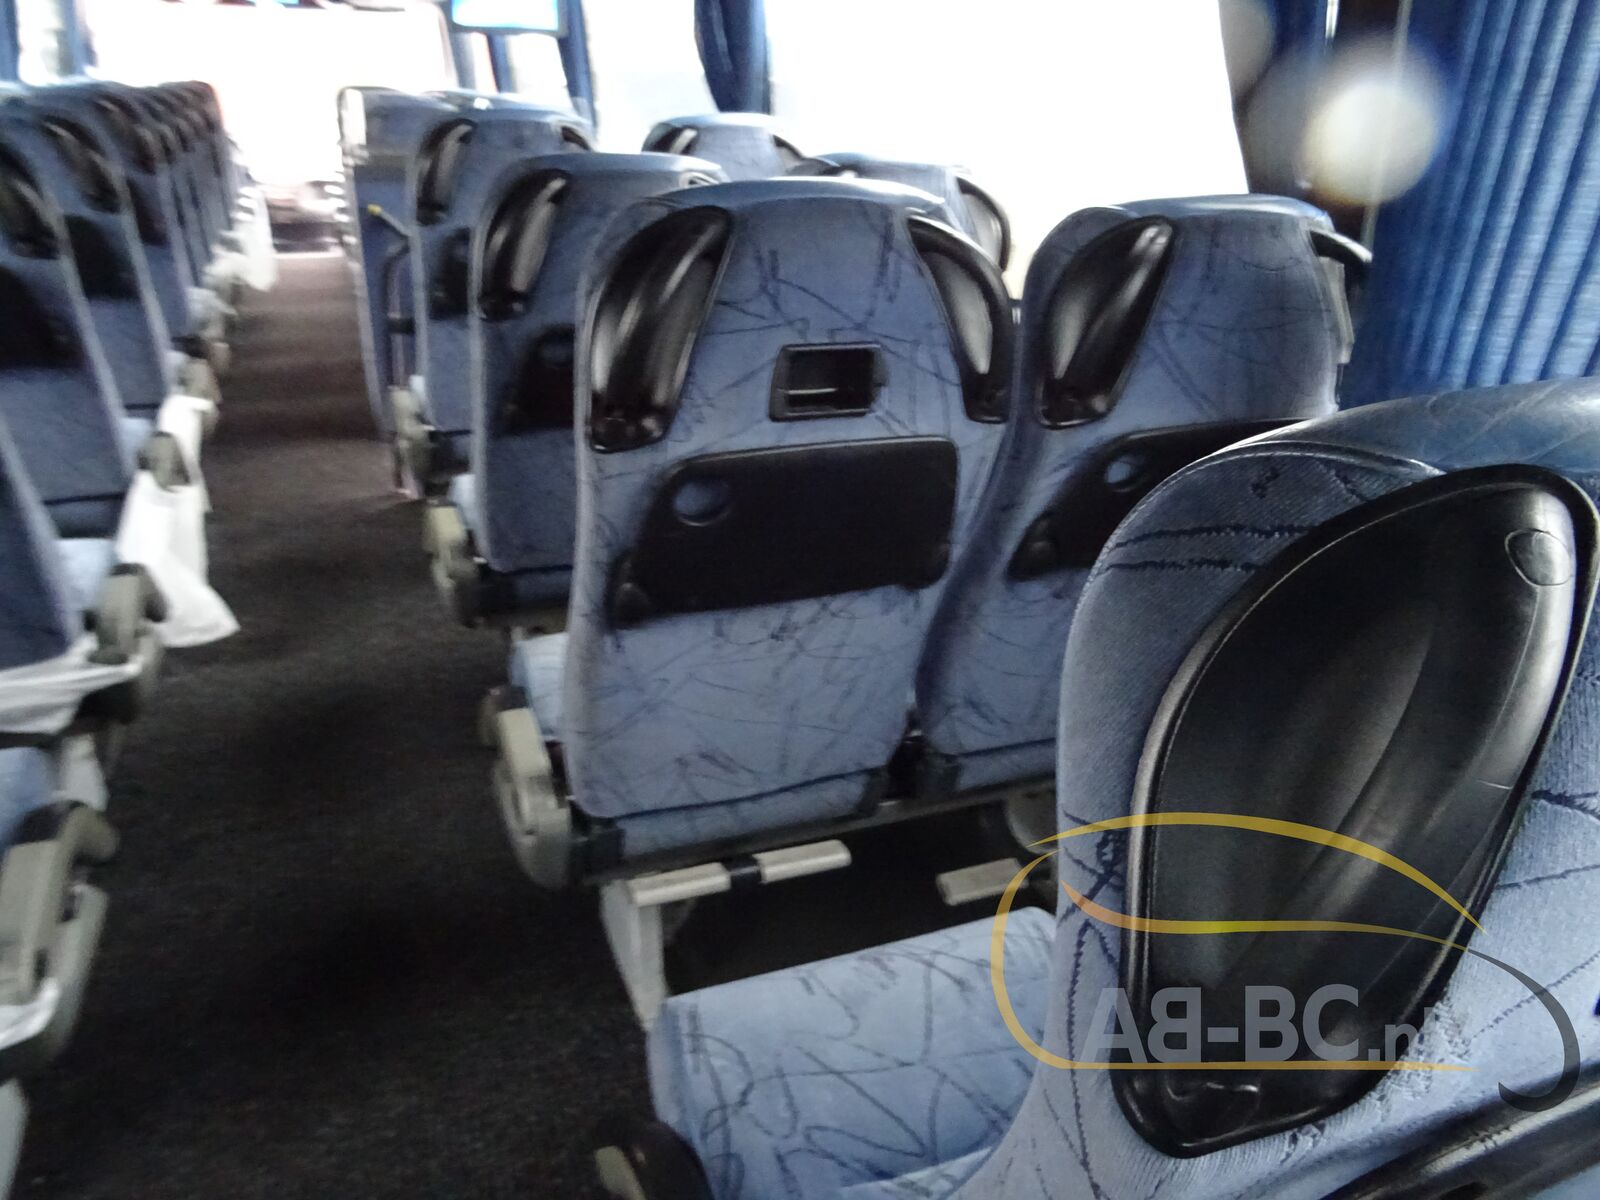 coach-bus-VDL-BOVA-Futura-61-Seats---1641294660267297380_orig_47b29183dab5699593433d7cf98133c3--22010413024564861800